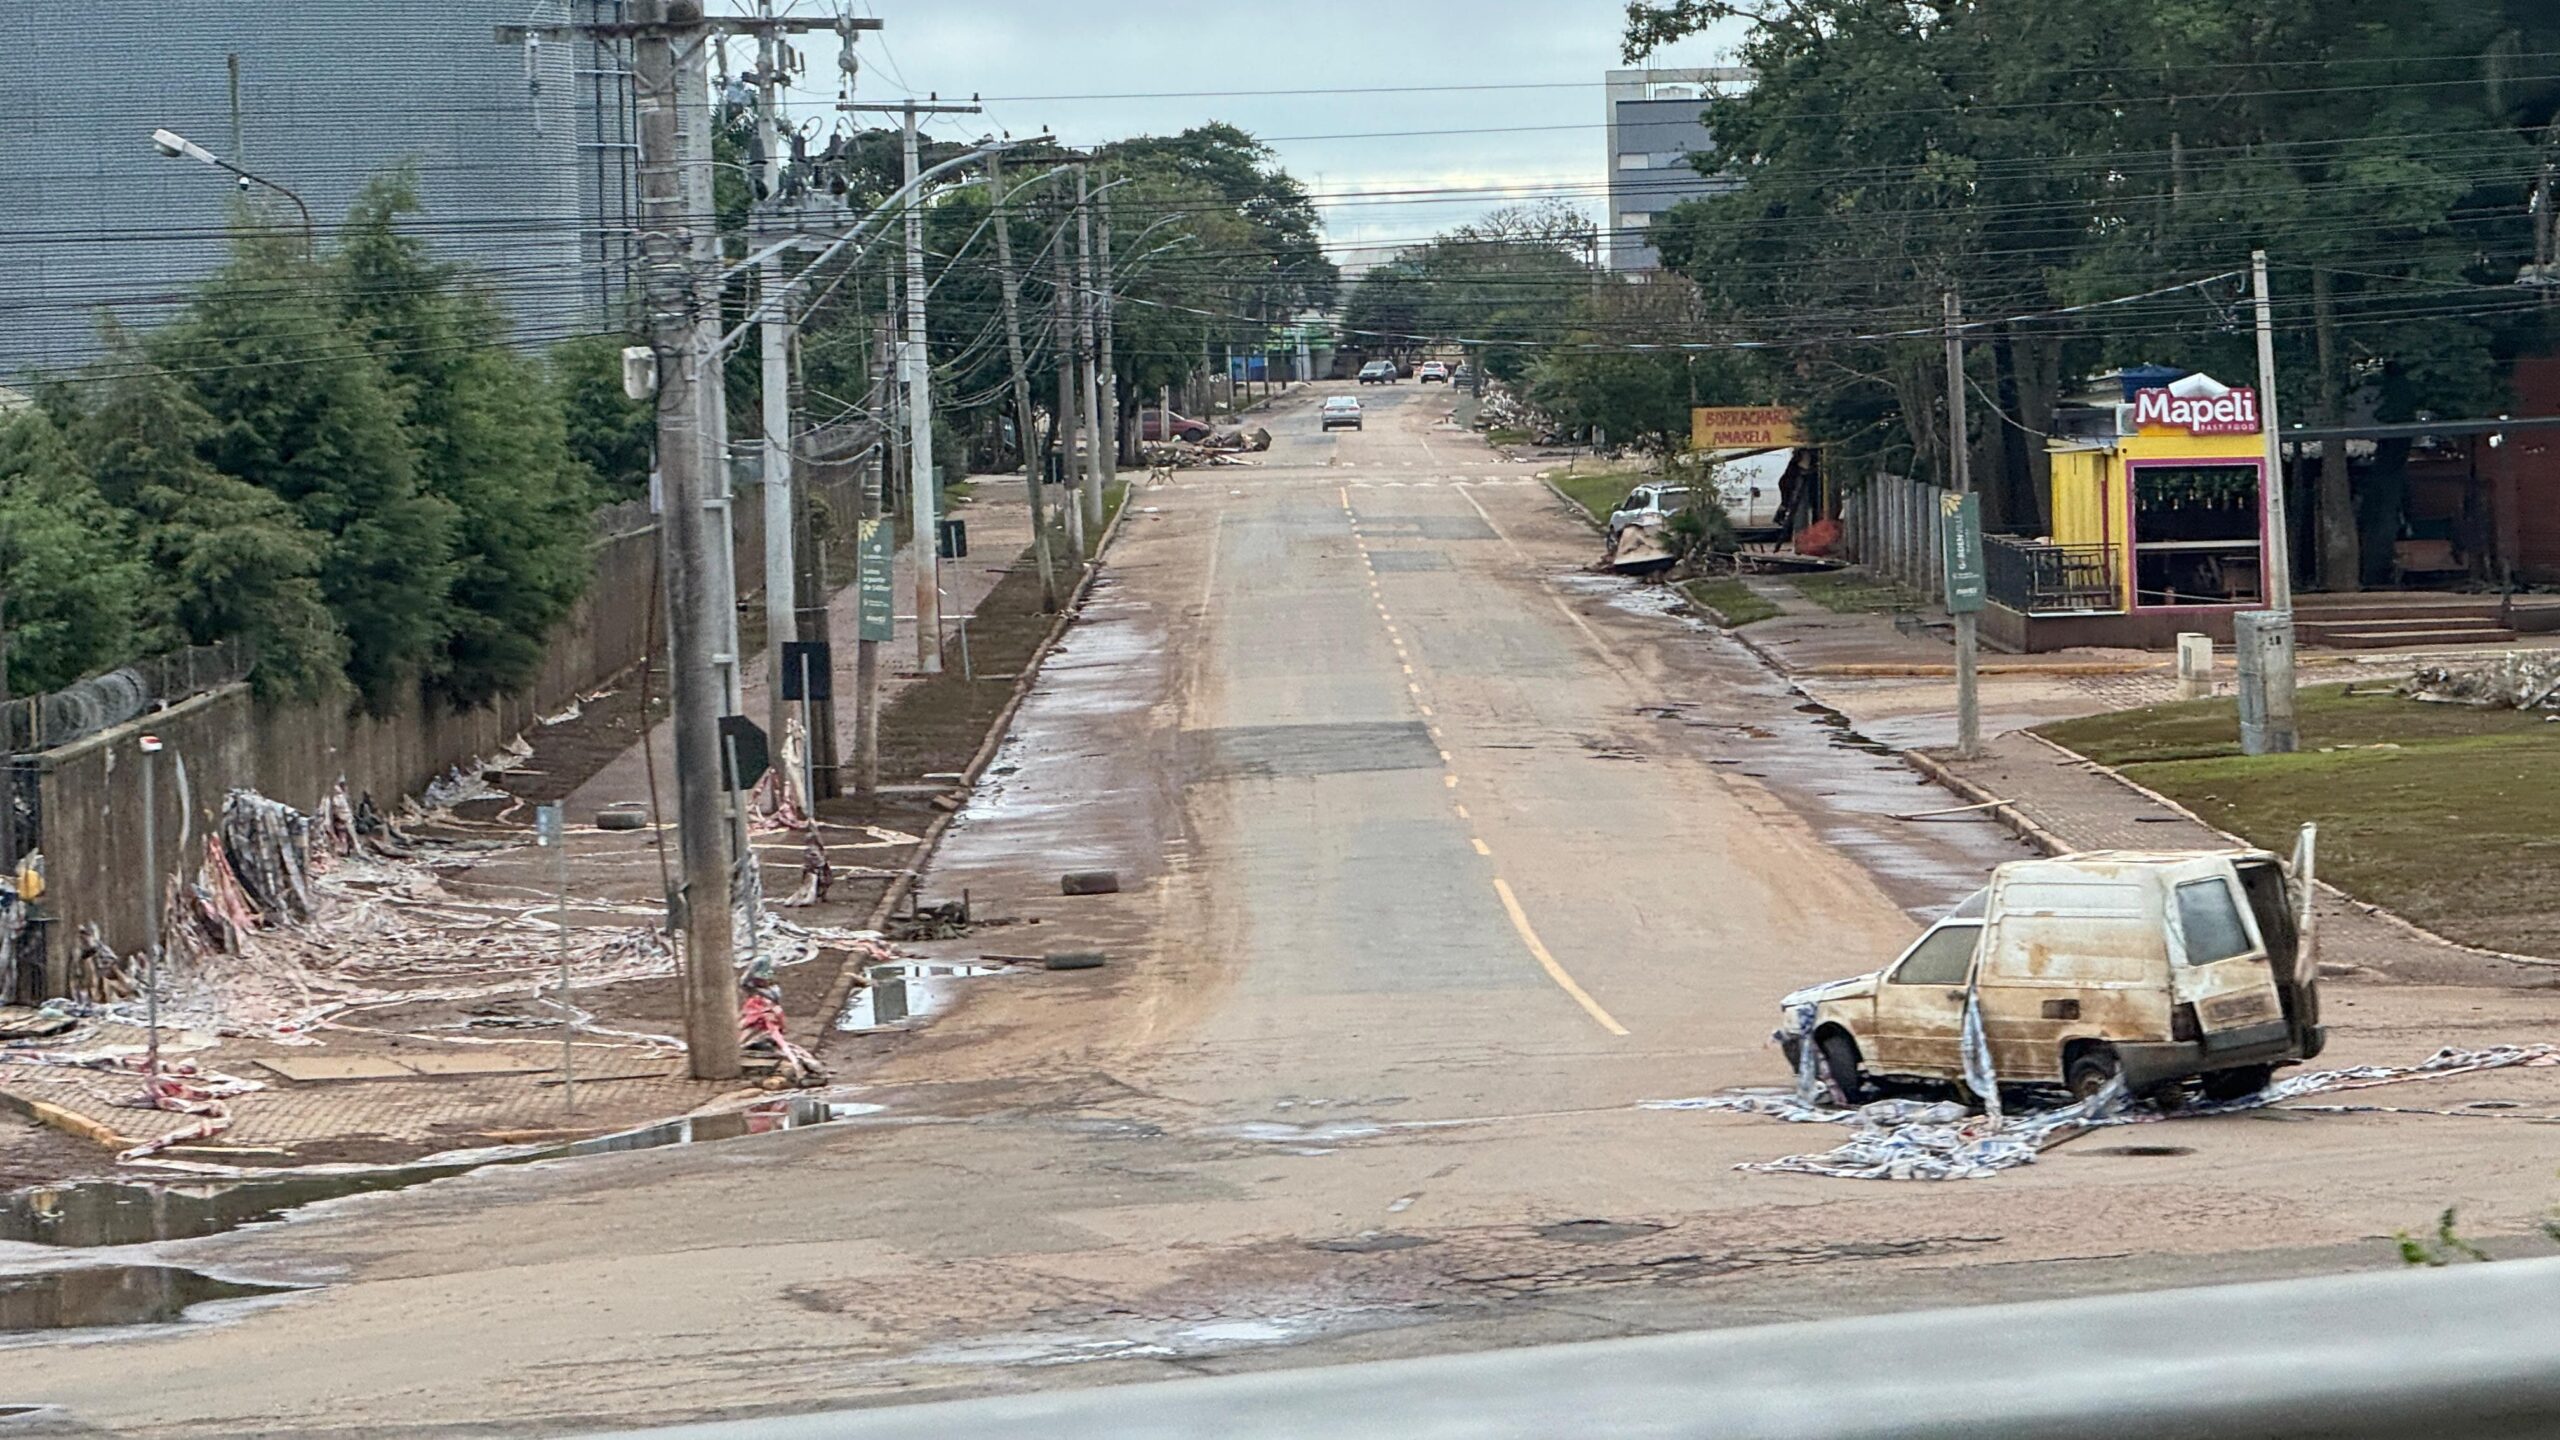 Fotos: Peterson Paul / Gabinete Paulinha (retrato da situação de calamidade pública enfrentada pelo município gaúcho de Eldorado do Sul)